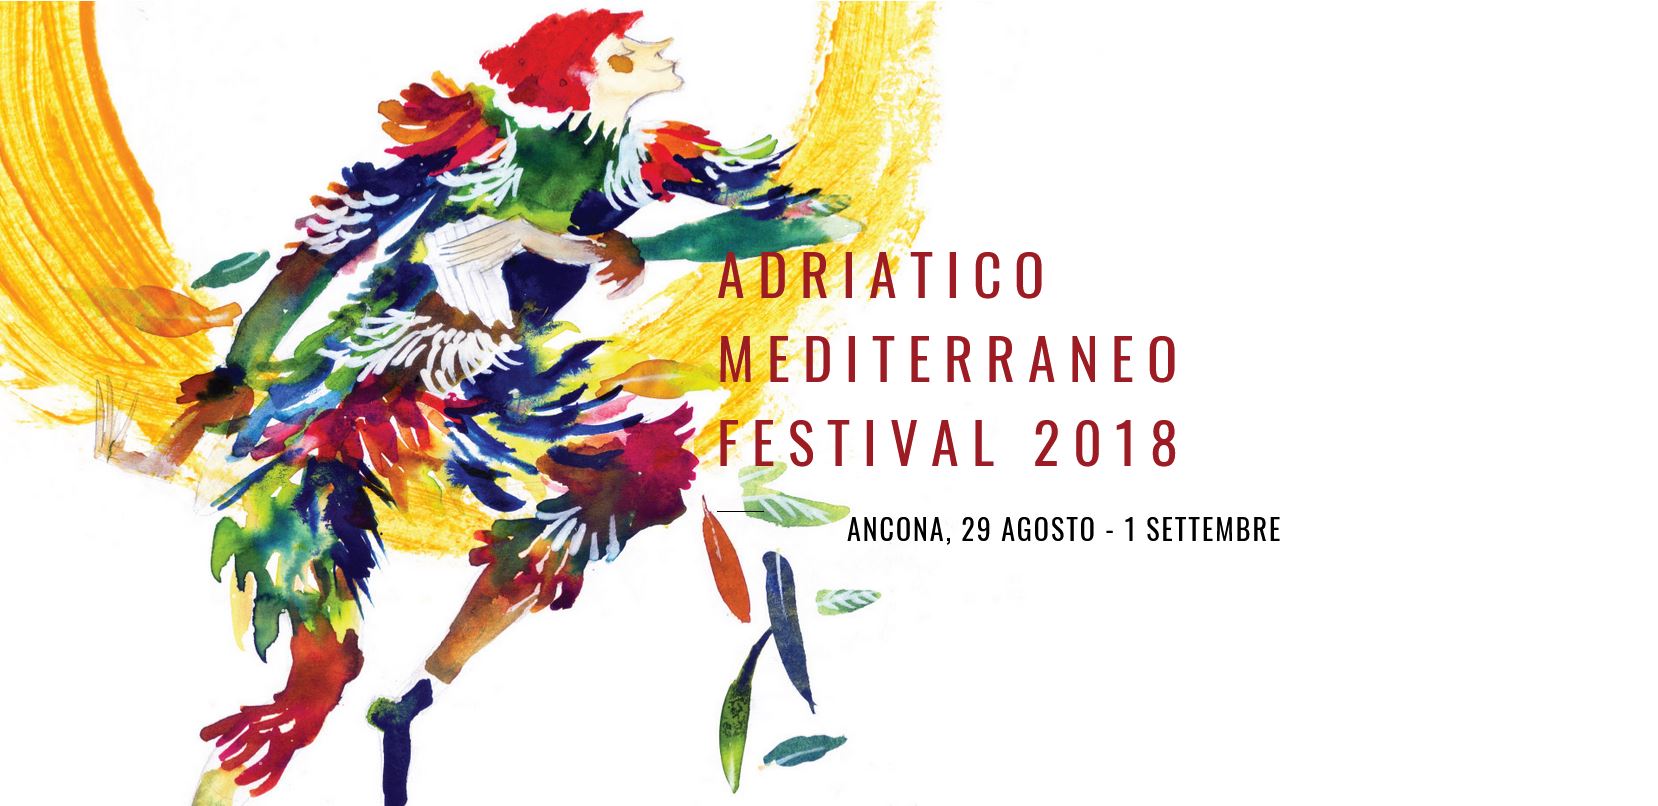 Adriatico Mediterraneo Festival: dal 29 agosto all’1 settembre 2018